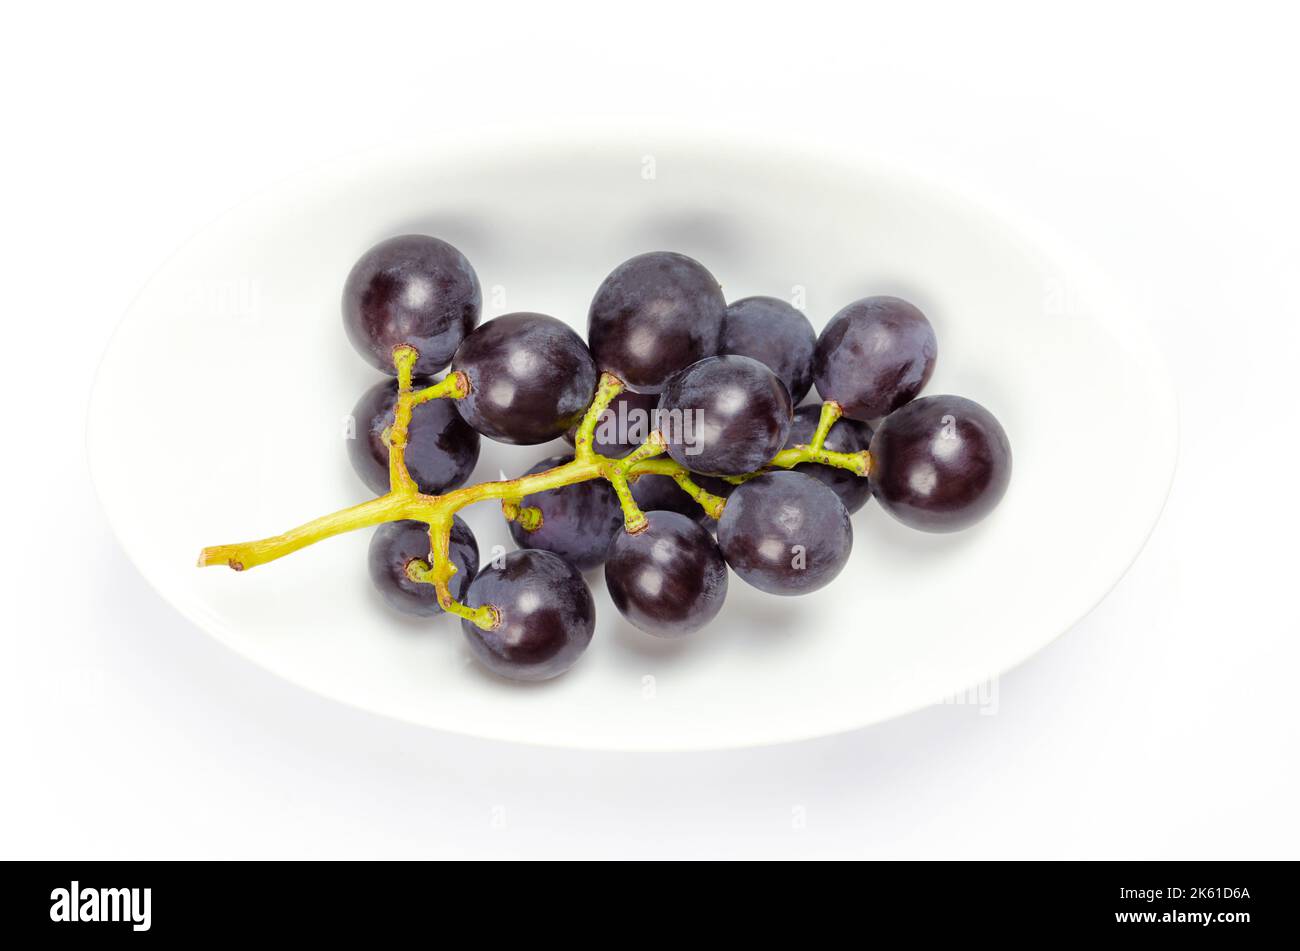 Vid común, en un cuenco blanco. Vides recién recolectadas de uvas silvestres maduras, Vitis vinifera, con pequeñas uvas moradas oscuras. Foto de stock